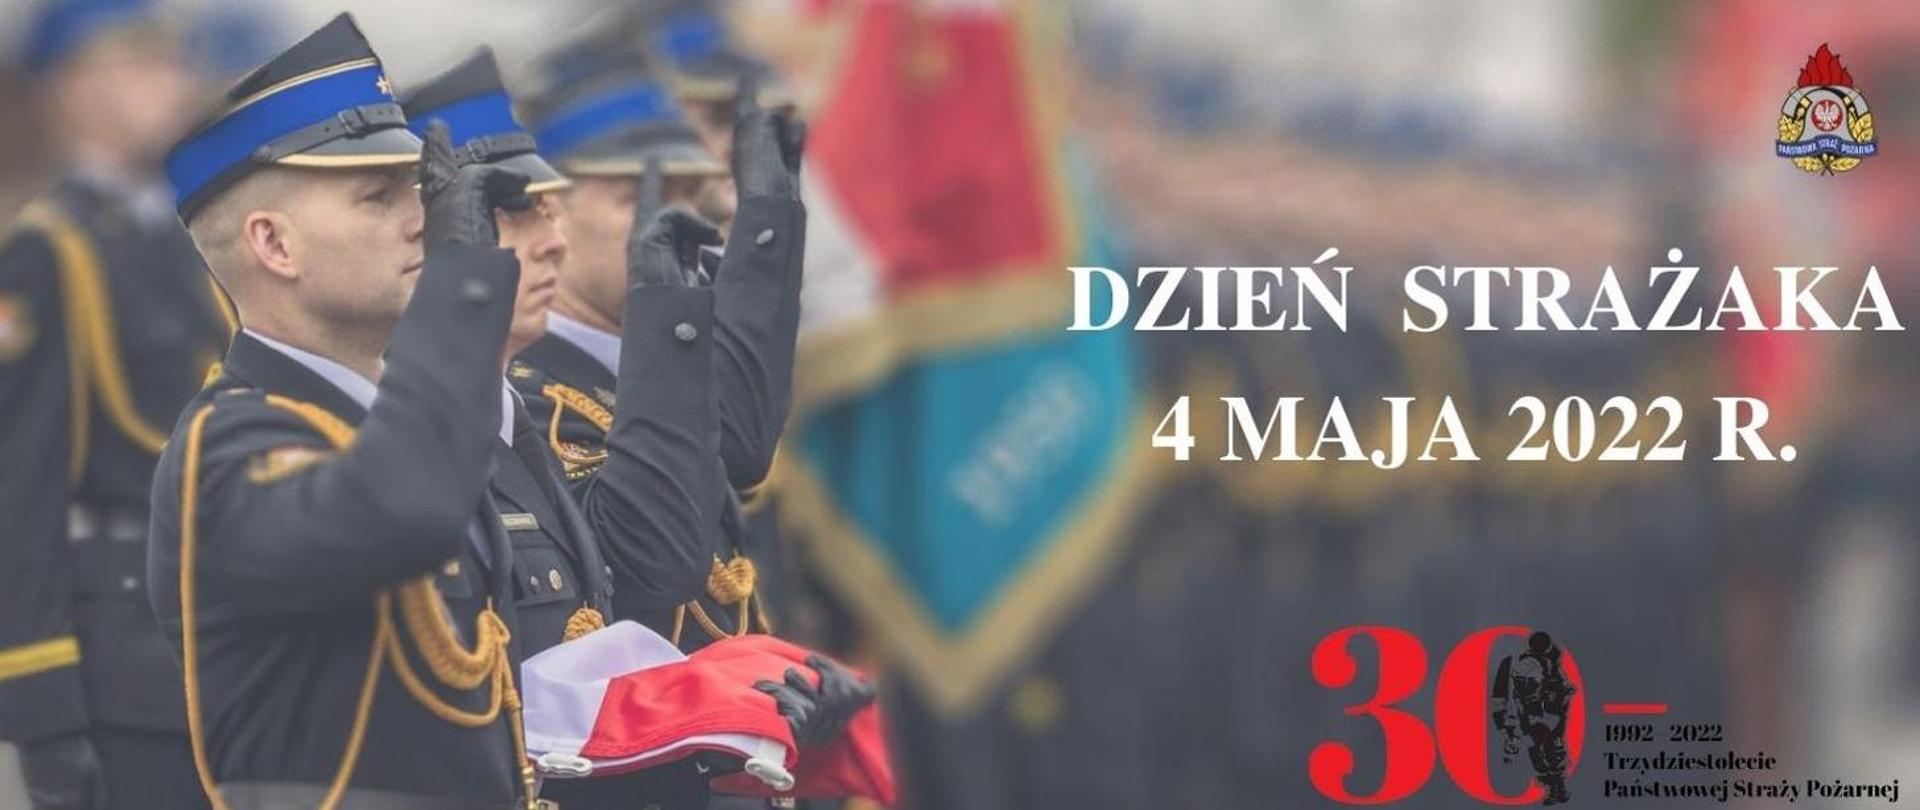 Zdjęcie przedstawia sylwetki strażaków w umundurowaniu galowym podczas salutowania. Jeden z nich trzyma w rękach złożoną flagę Polski. Obok widnieje napis: DZIEŃ STRAŻAKA 4 MAJA 2022 R. oraz logo 30-lecia Państwowej Straży Pożarnej oraz Państwowej Straży Pożarnej.